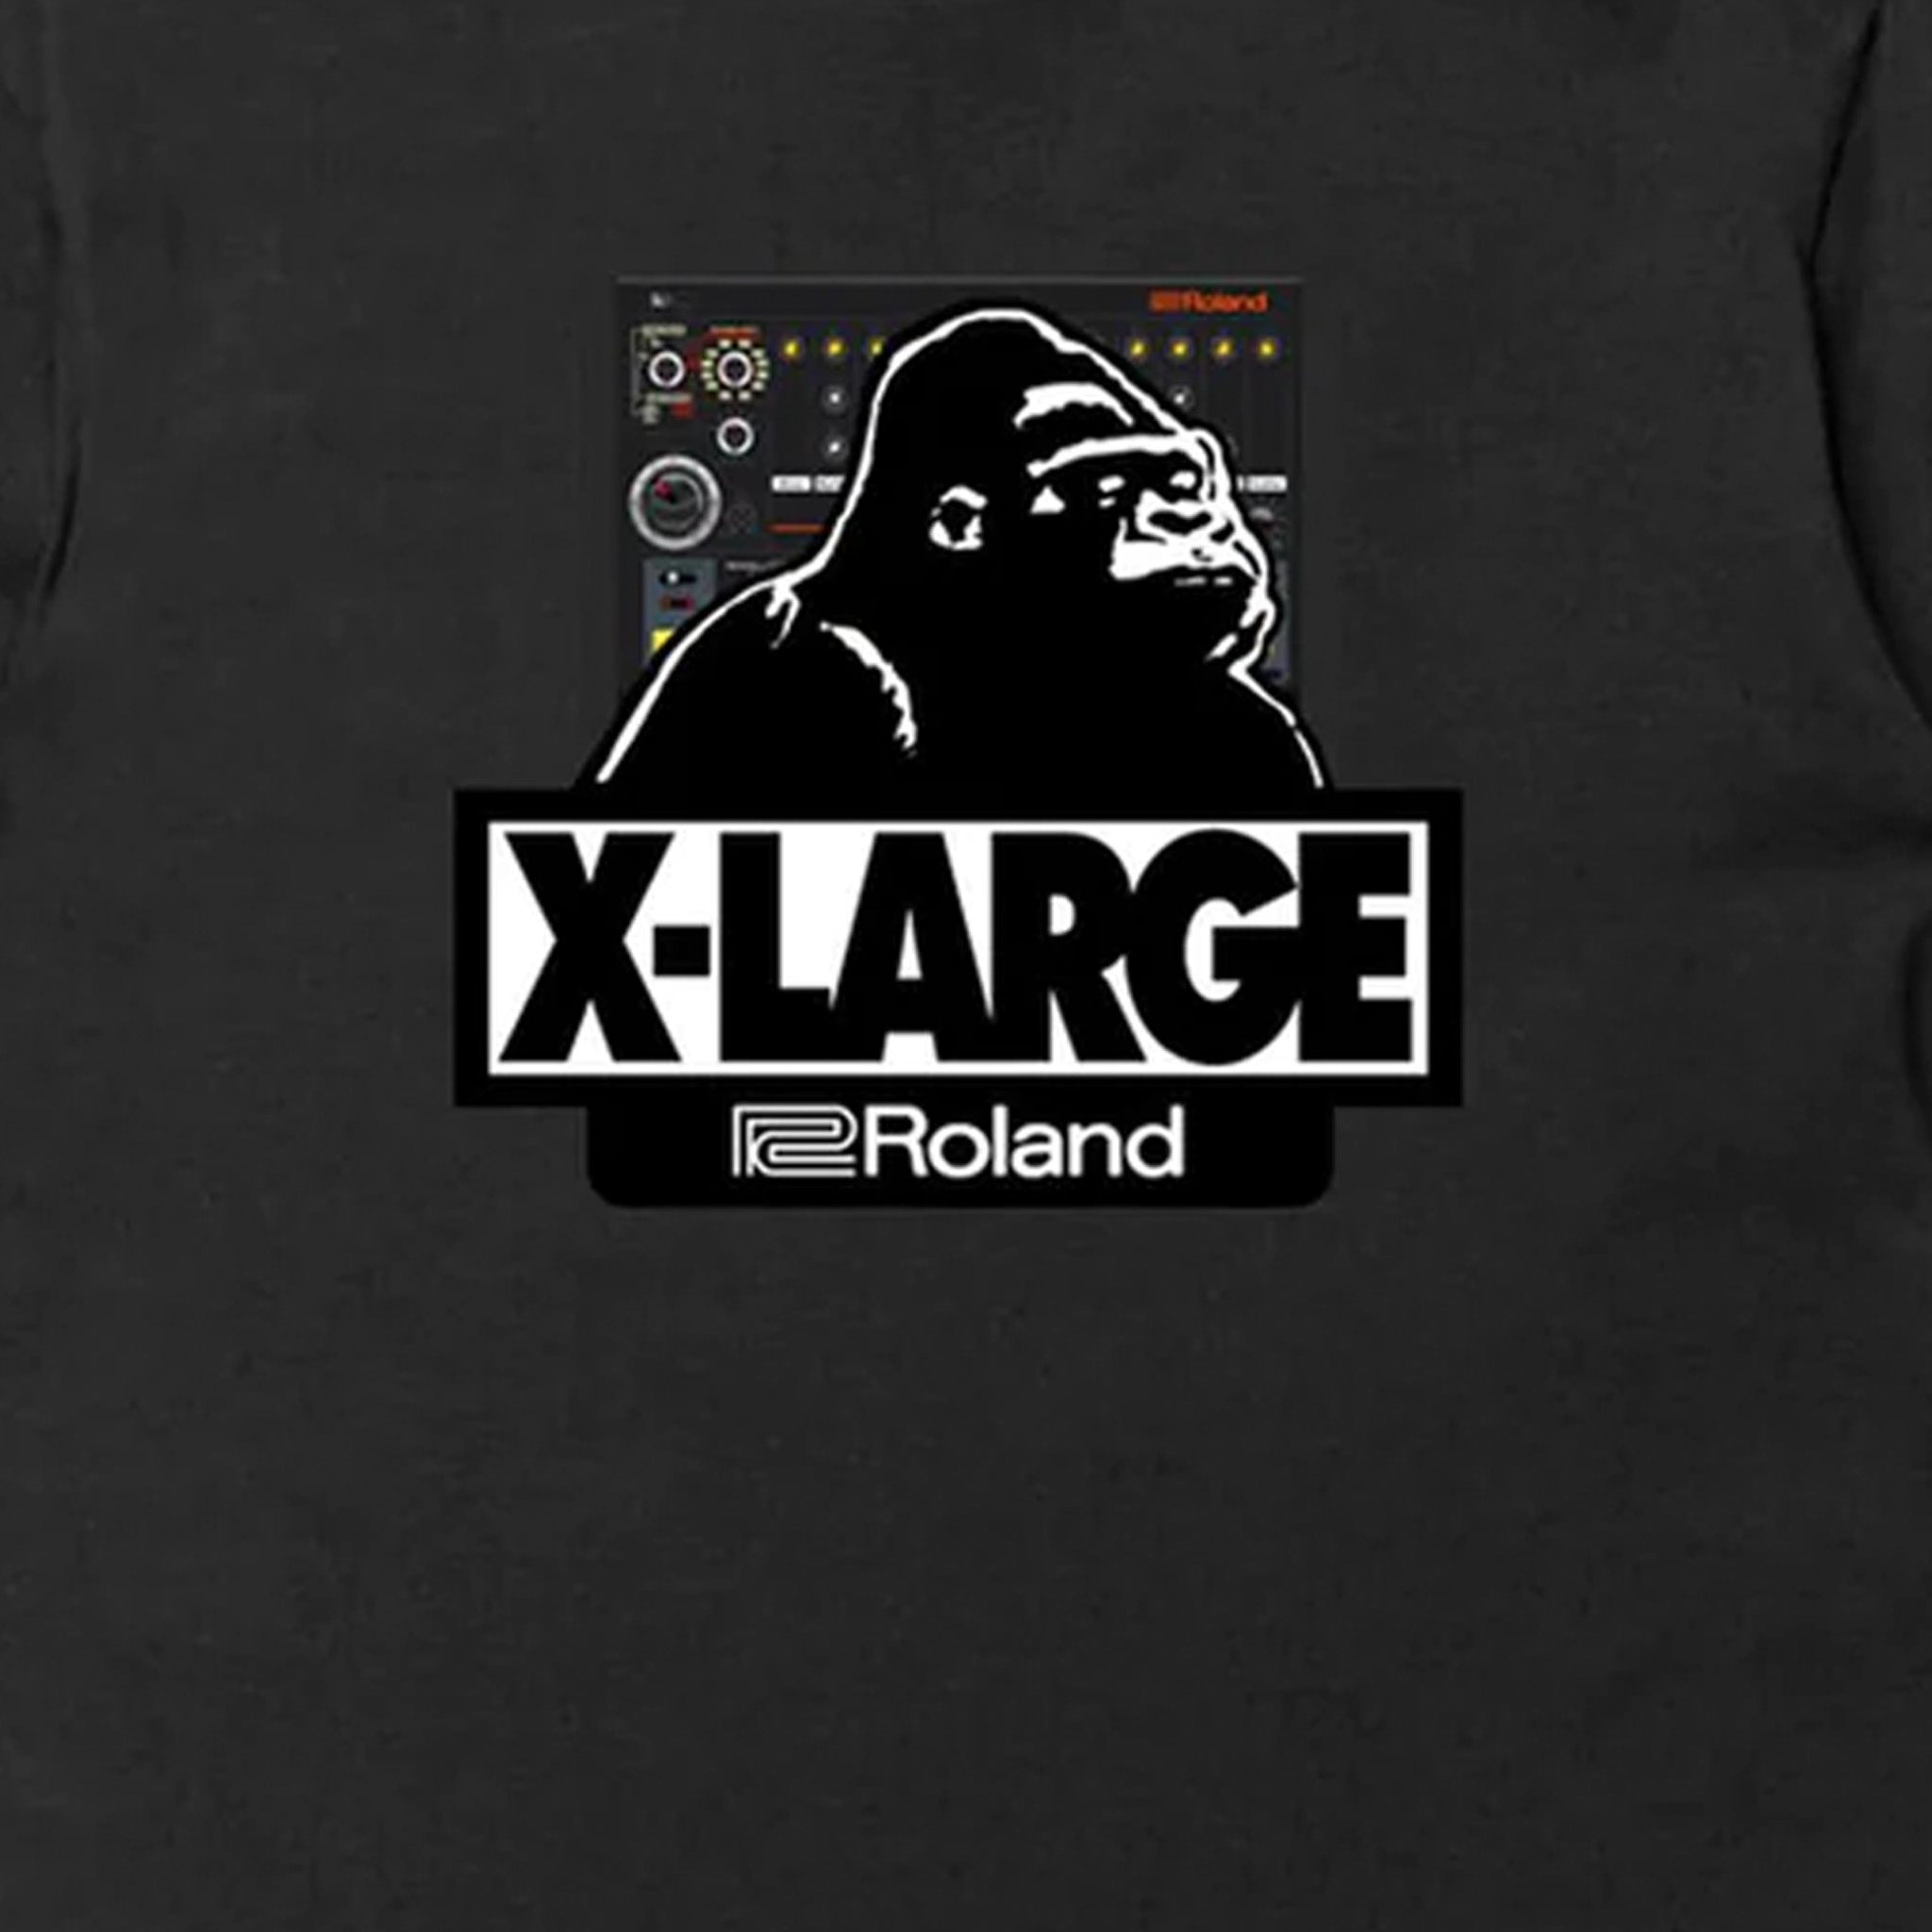 Roland Lifestyle XLARGE Roland T-Shirt (Black) - August Shop